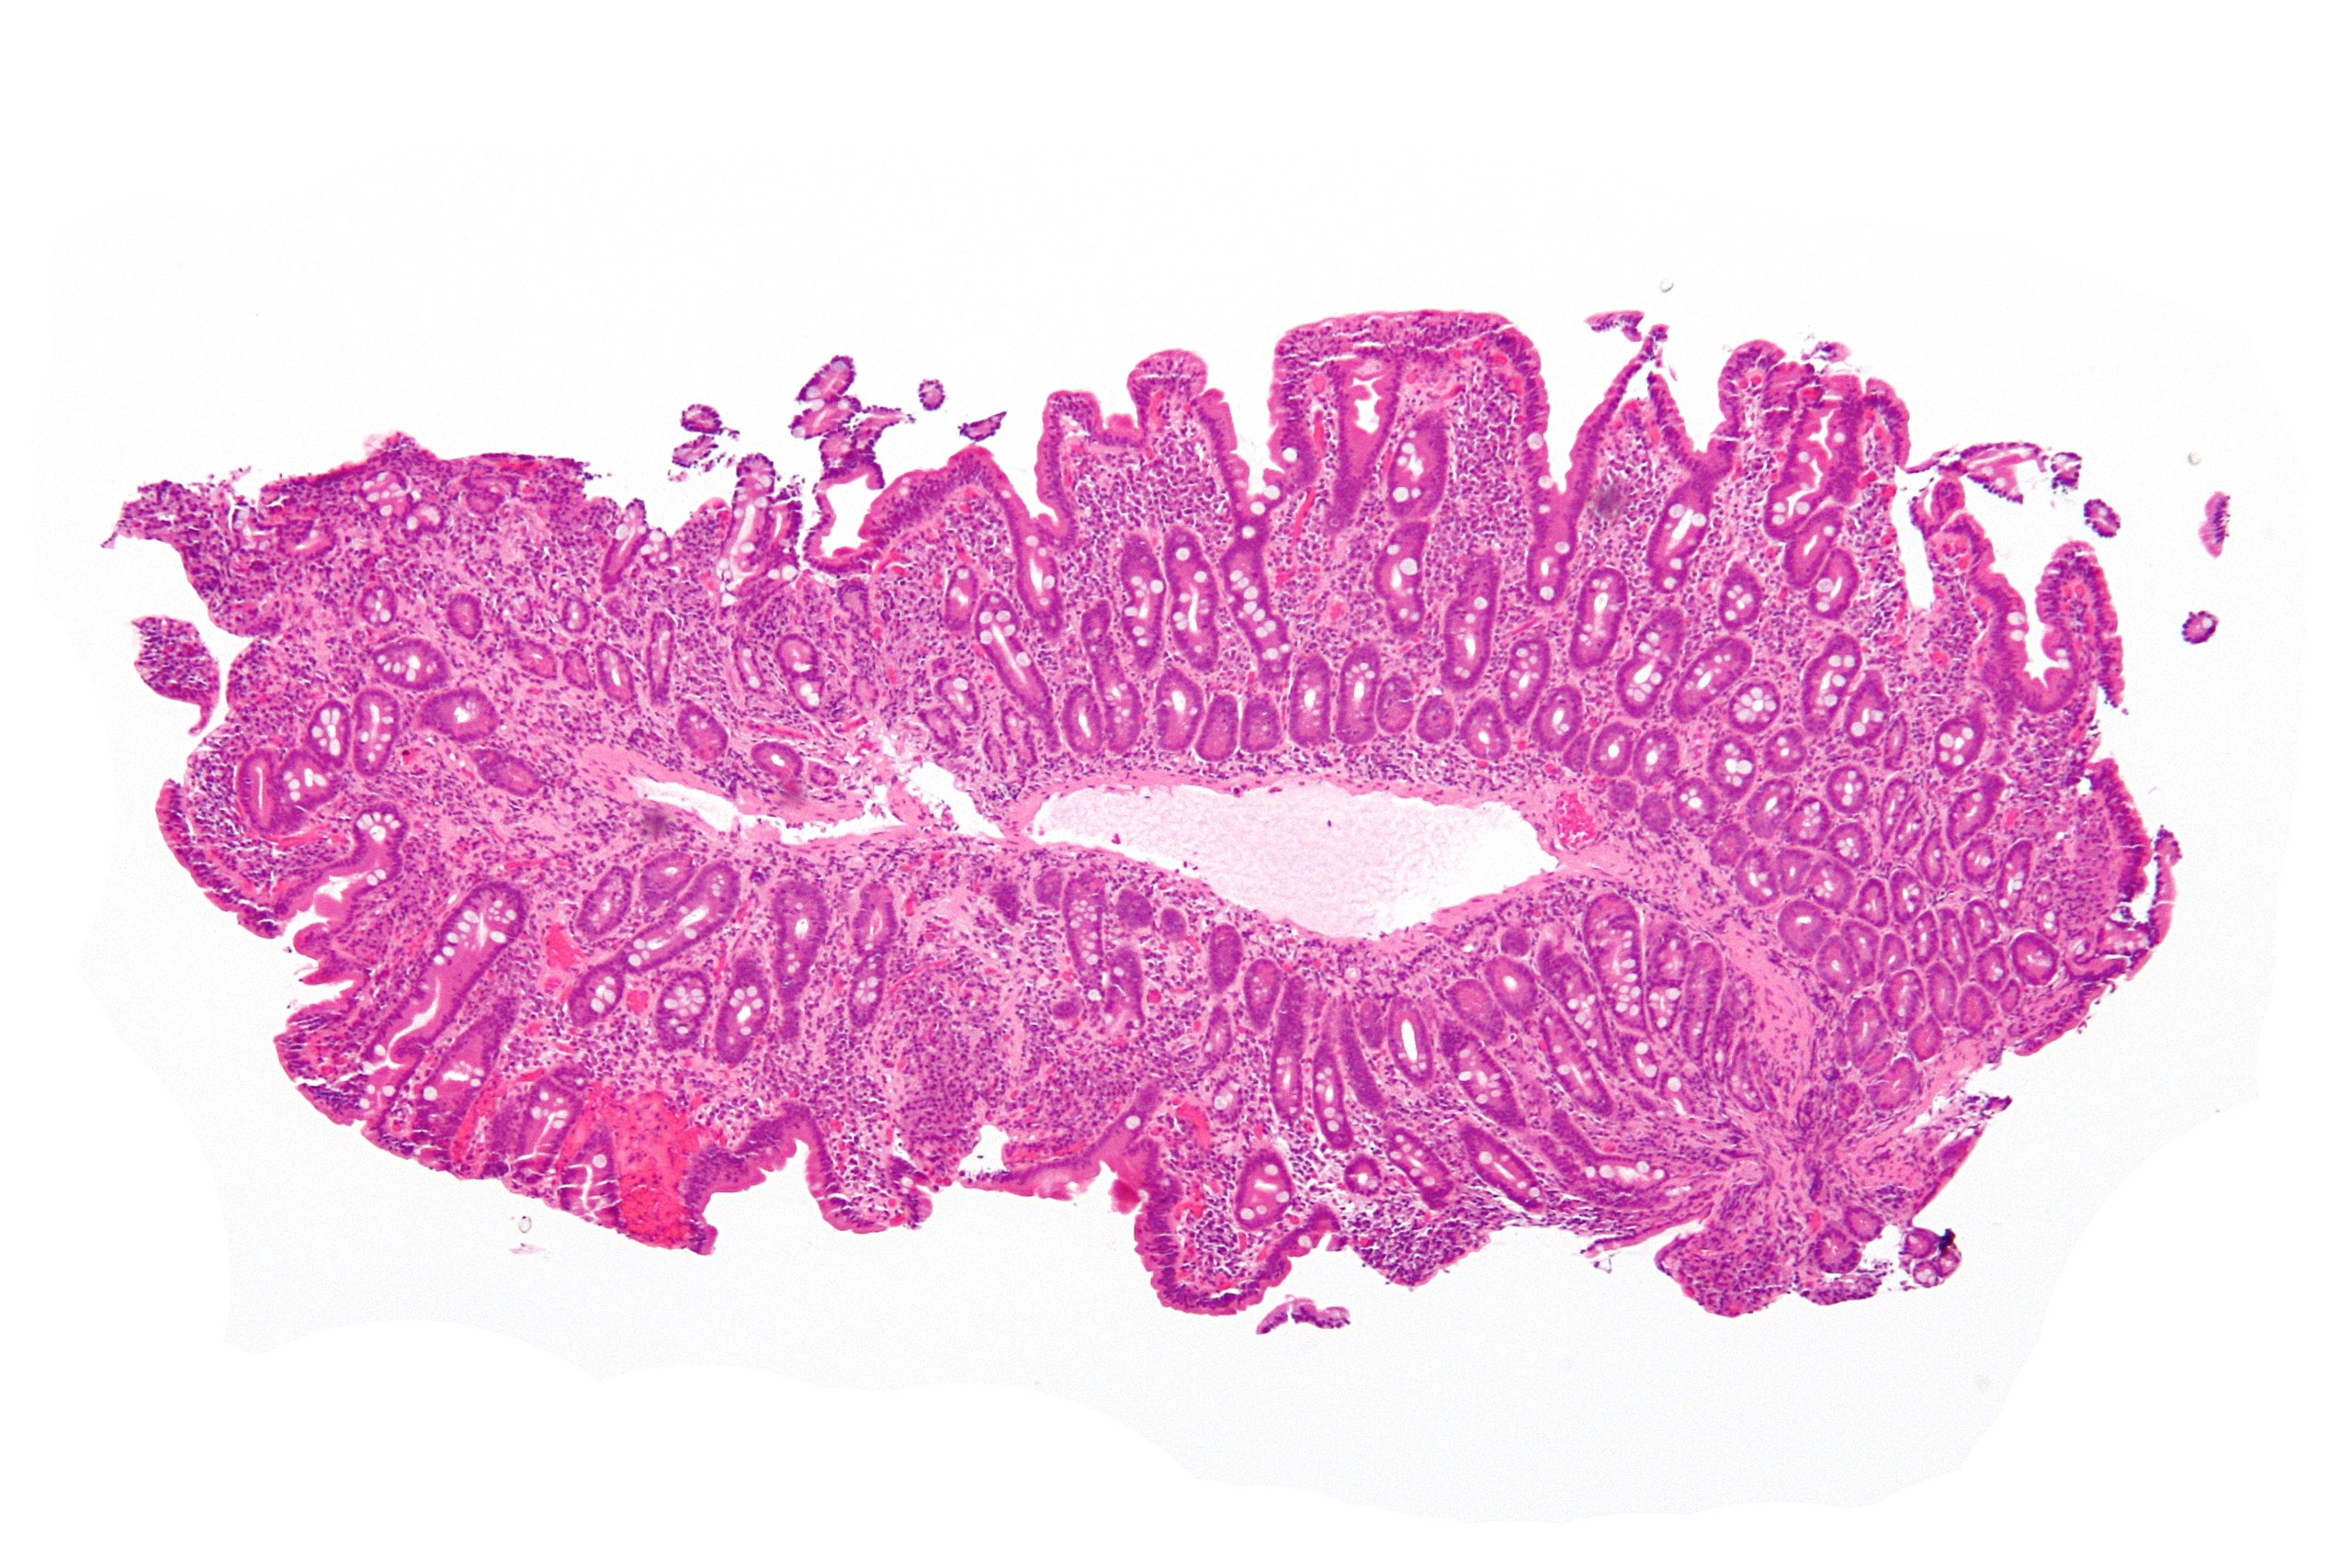 Hepatocellularis carcinoma